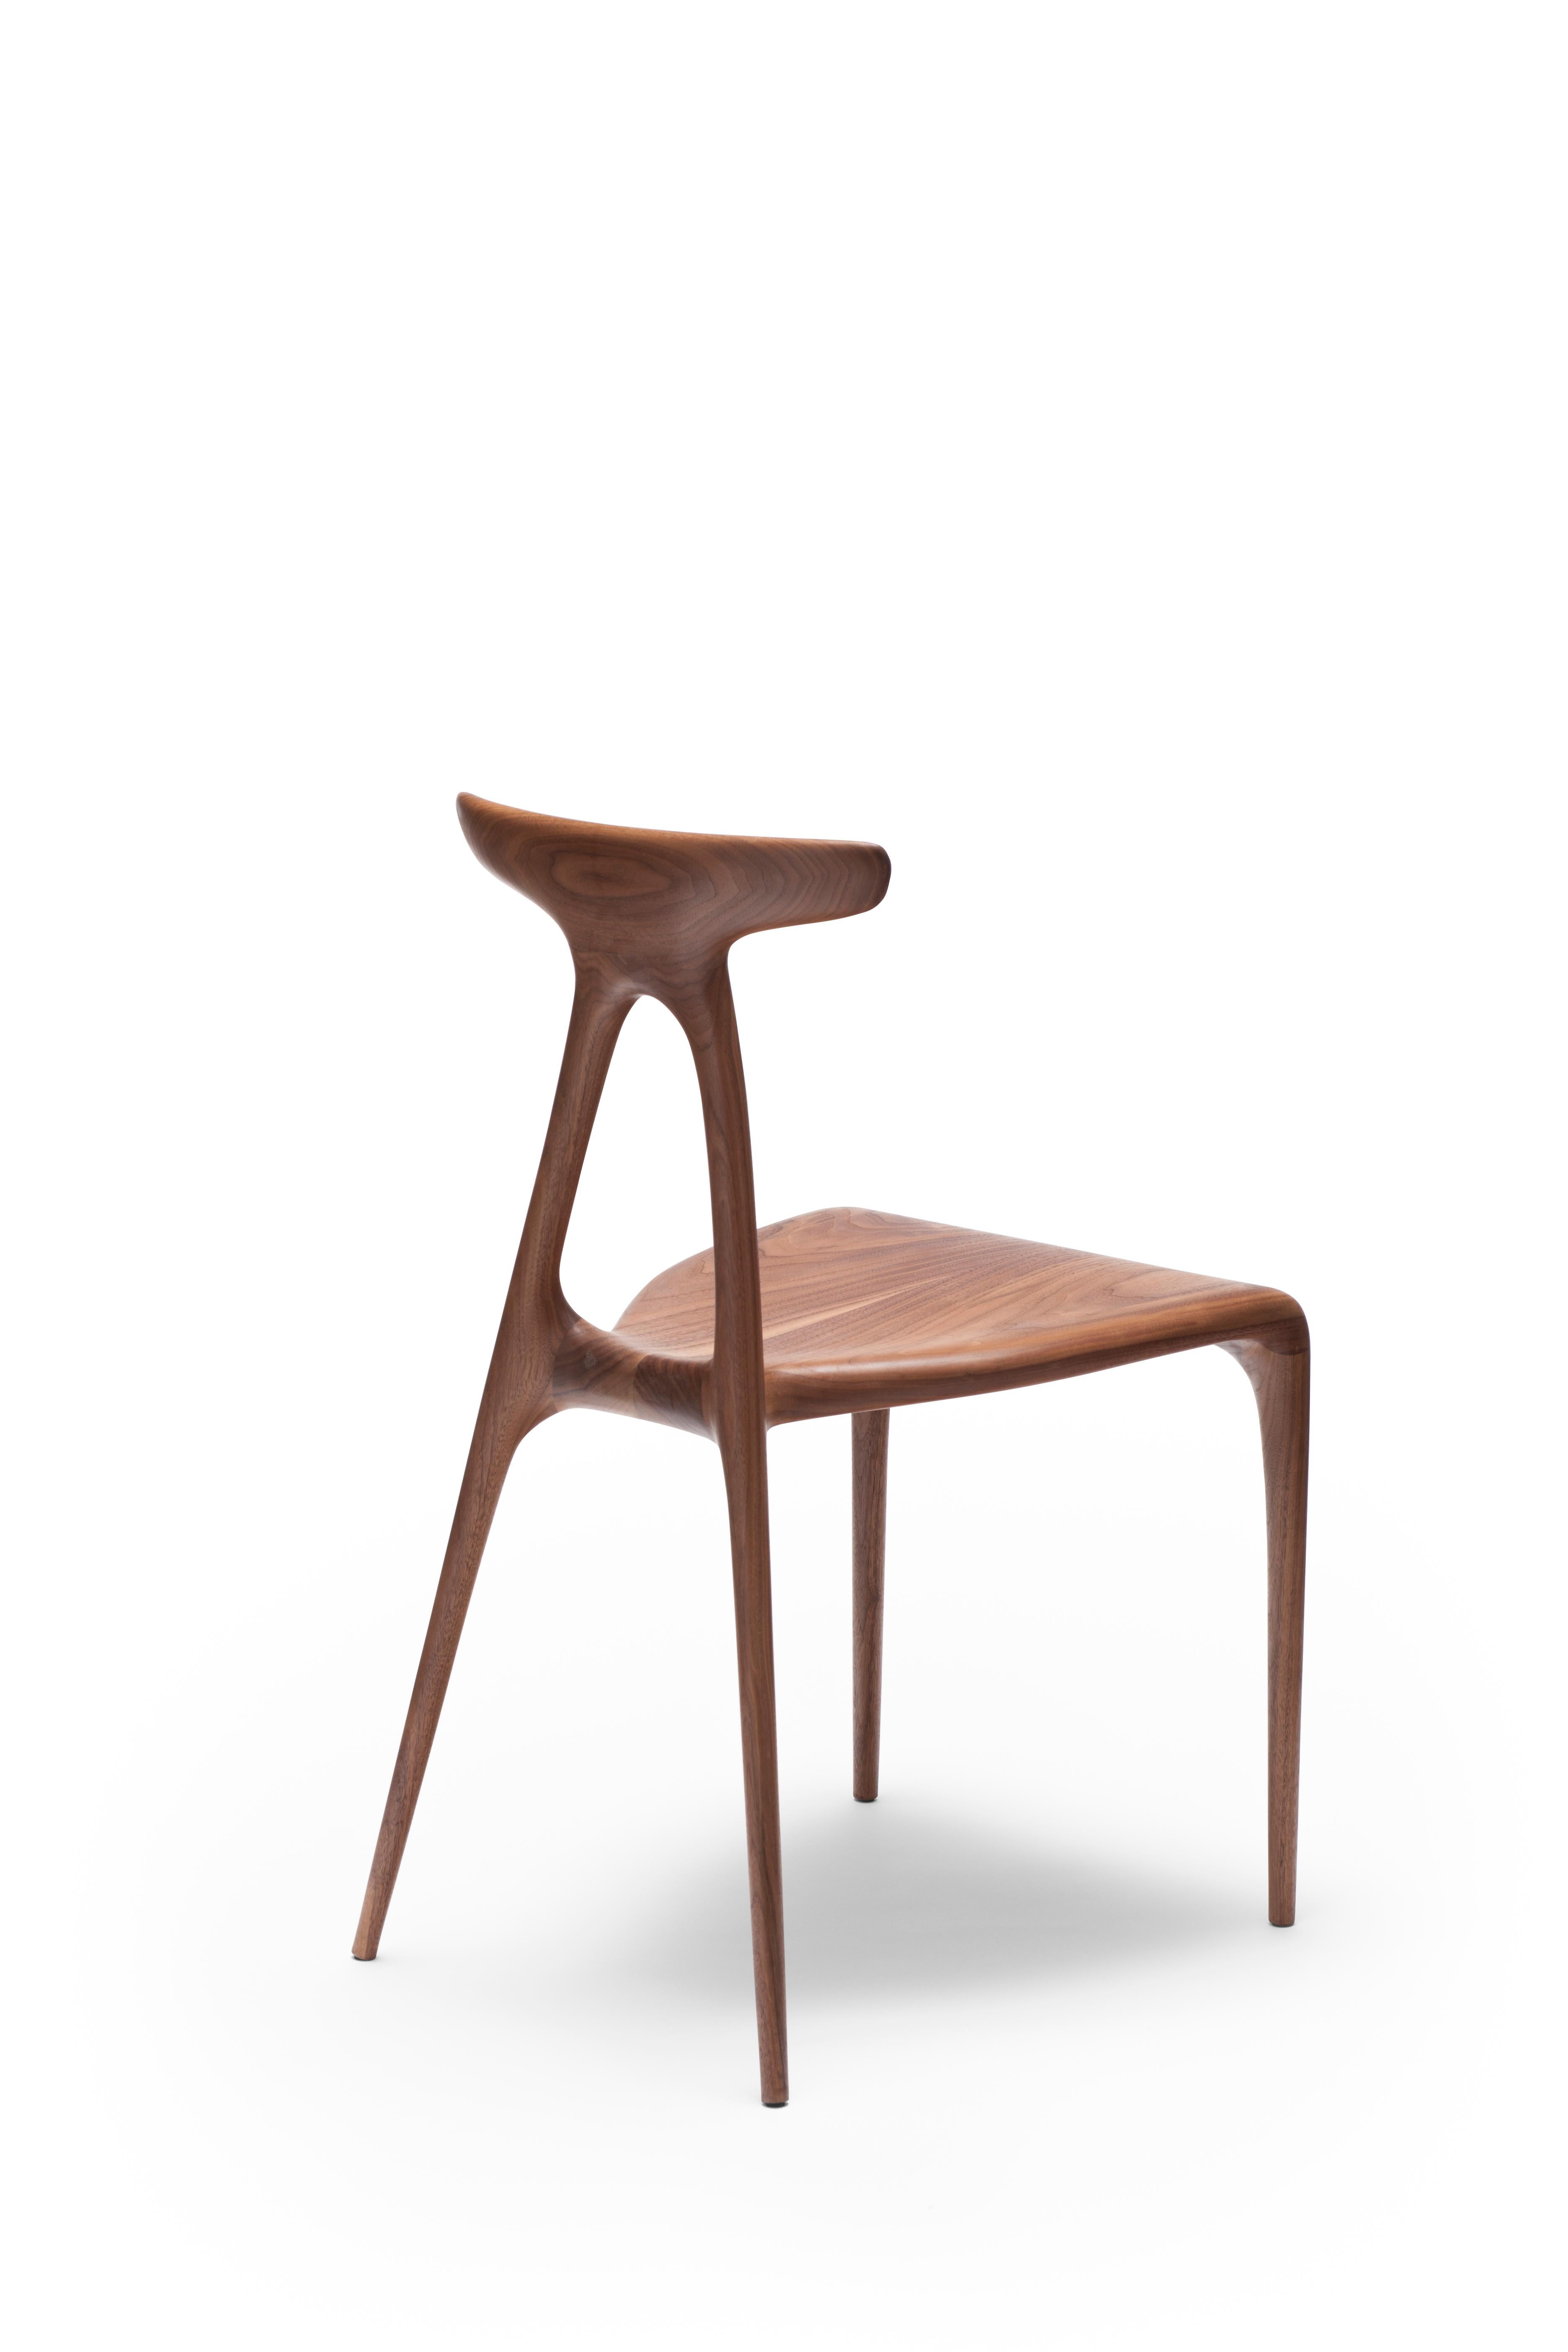 Une chaise empilable contemporaine en bois massif à usages multiples, produite à l'aide des dernières technologies de production de meubles en bois façonné. Le design s'enorgueillit d'un geste architectural fort qui confère à la chaise sa force